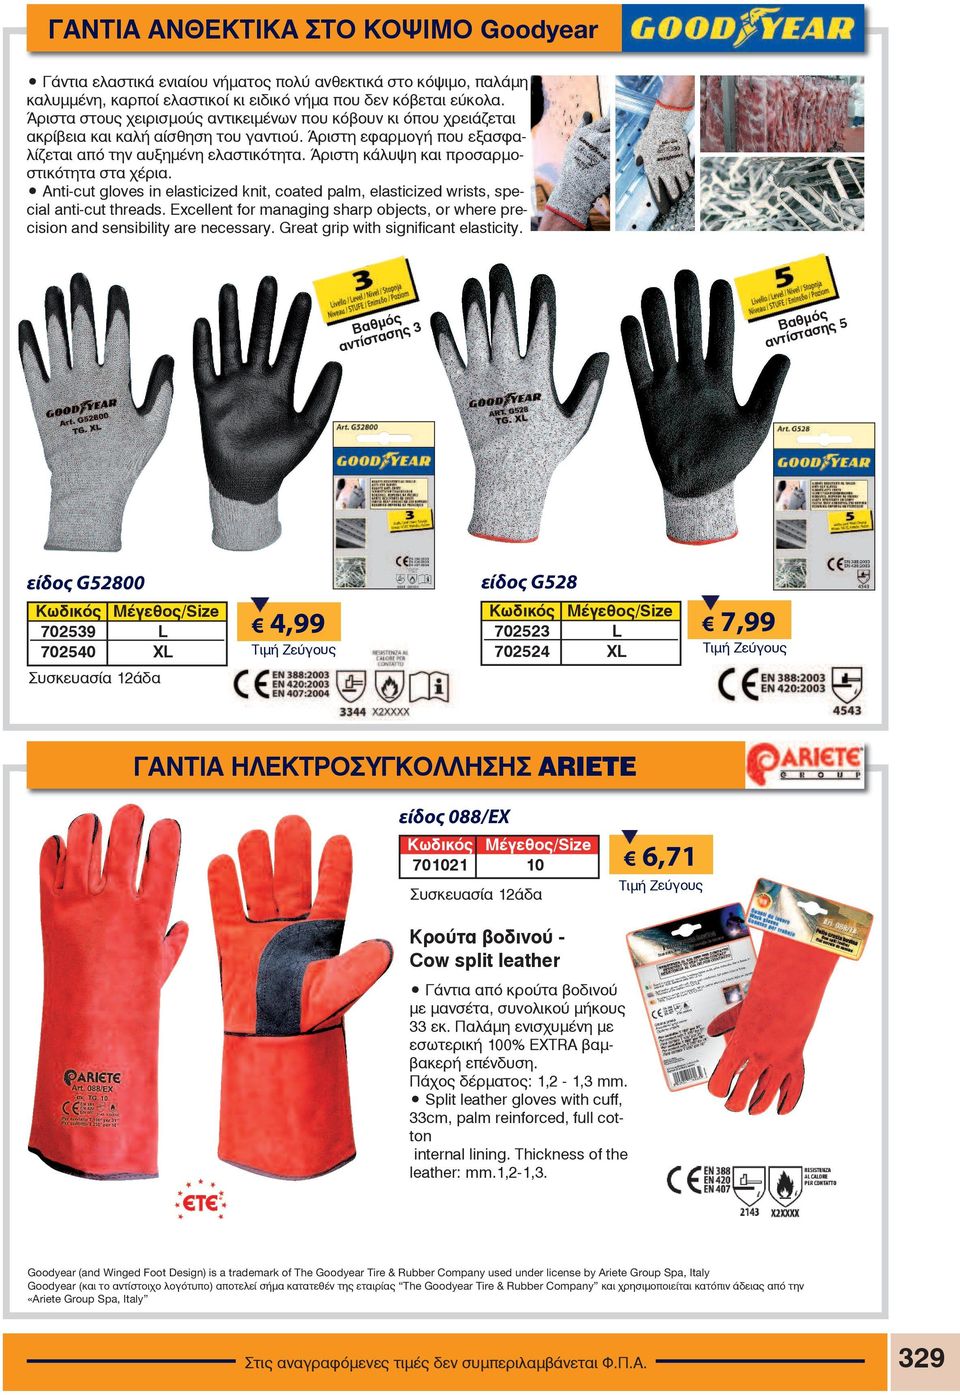 Άριστη κάλυψη και προσαρµοστικότητα στα χέρια. Anti-cut gloves in elasticized knit, coated palm, elasticized wrists, special anti-cut threads.